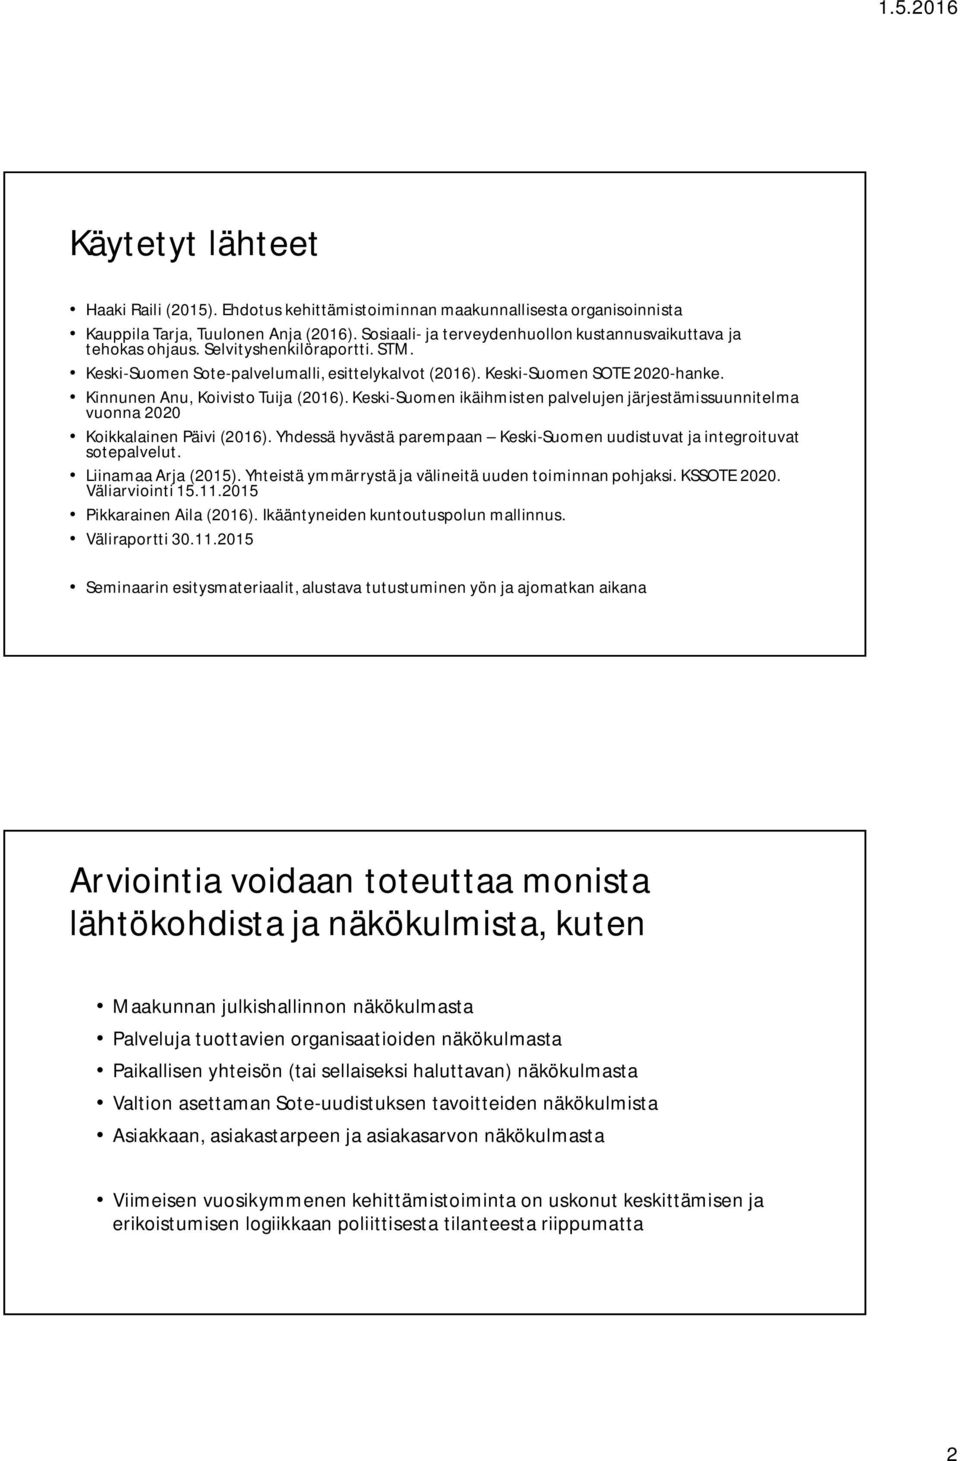 Kinnunen Anu, Koivisto Tuija (2016). Keski-Suomen ikäihmisten palvelujen järjestämissuunnitelma vuonna 2020 Koikkalainen Päivi (2016).